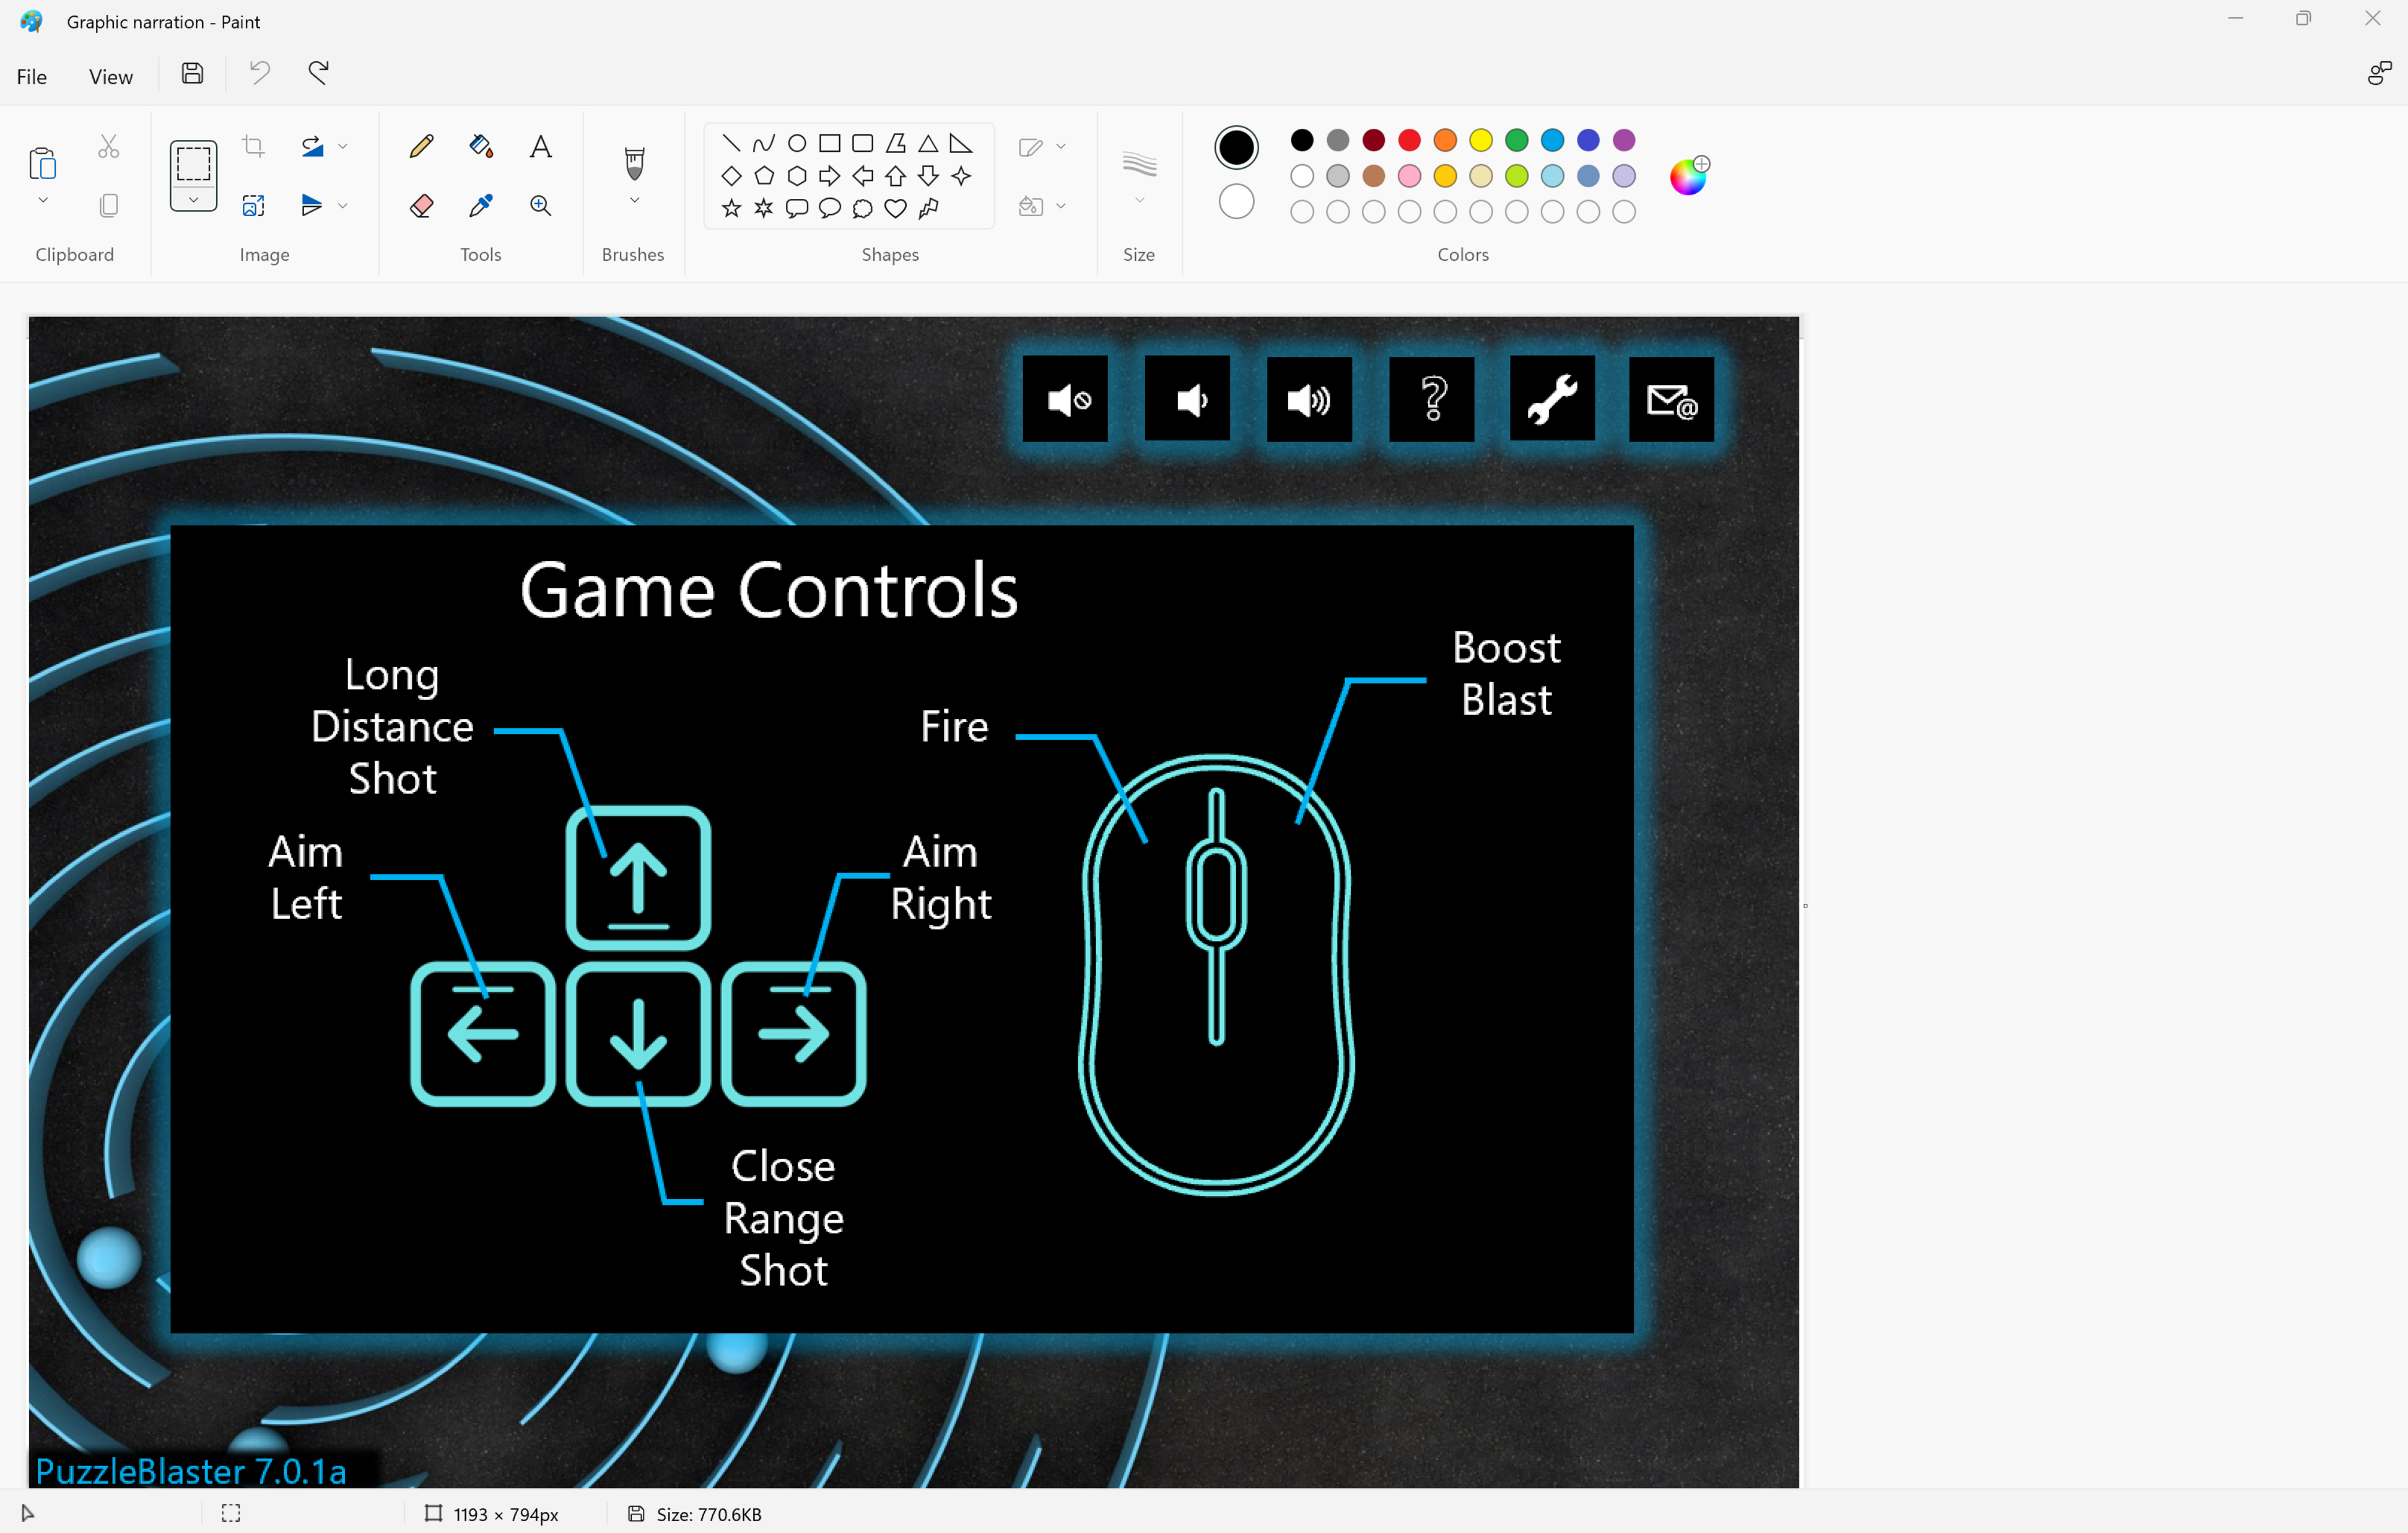 パズル ゲームのゲーム制御メニュー UI の画像を貼り付けた Windows ペイント アプリのスクリーンショット。